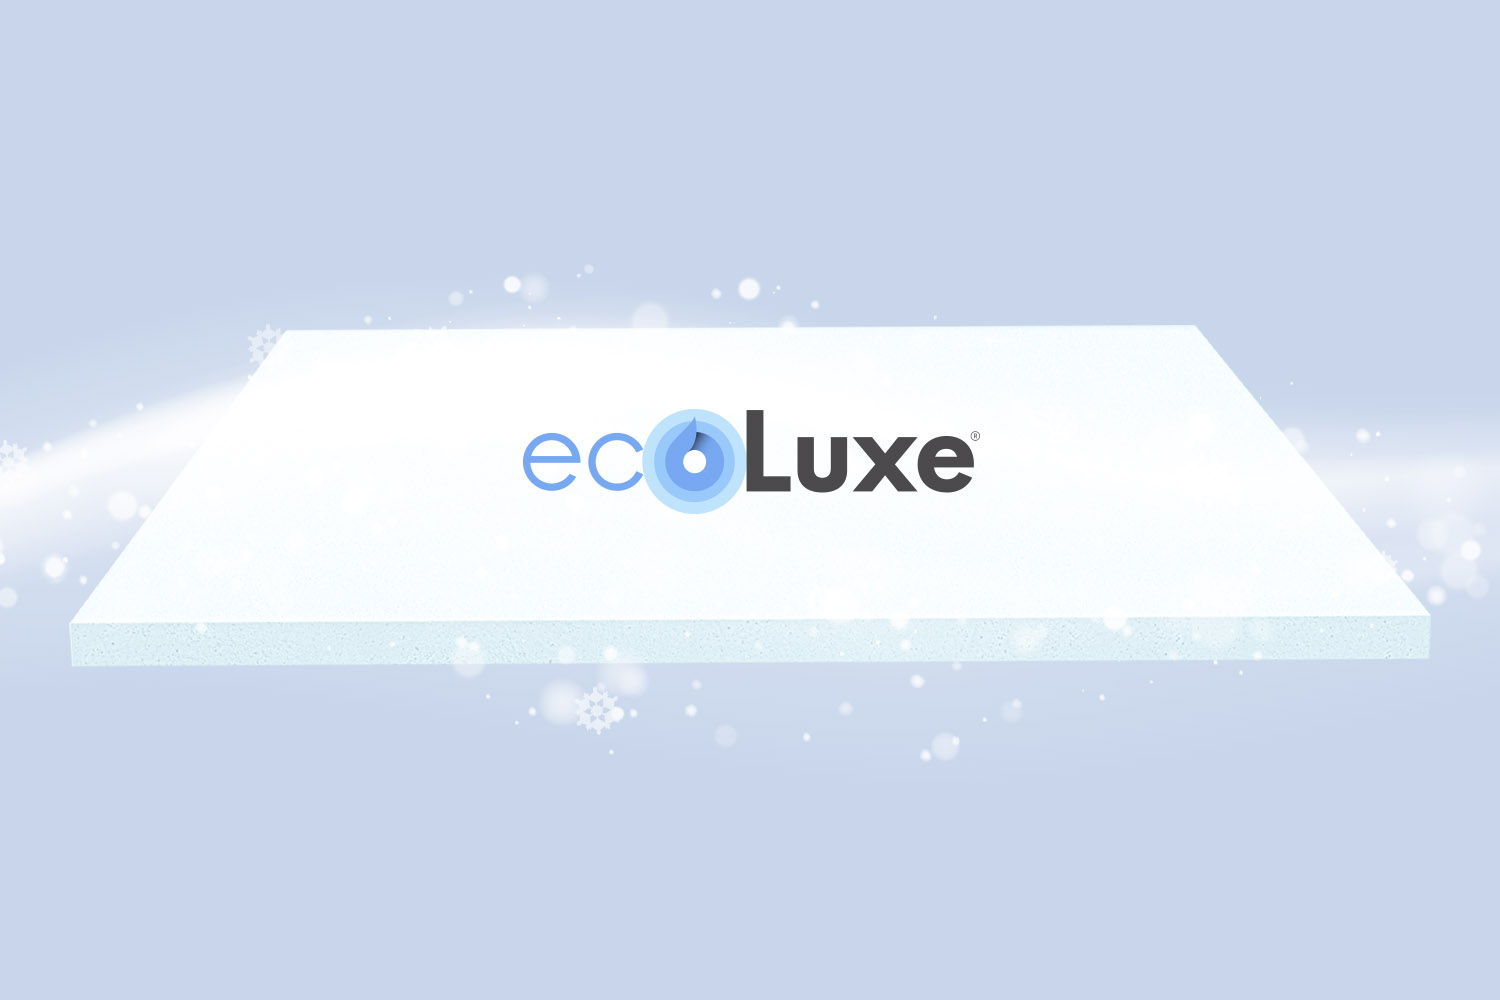 Graphique stylisé de la mousse en gel rafraîchissant ecoLuxe® des matelas Octave Horizon.